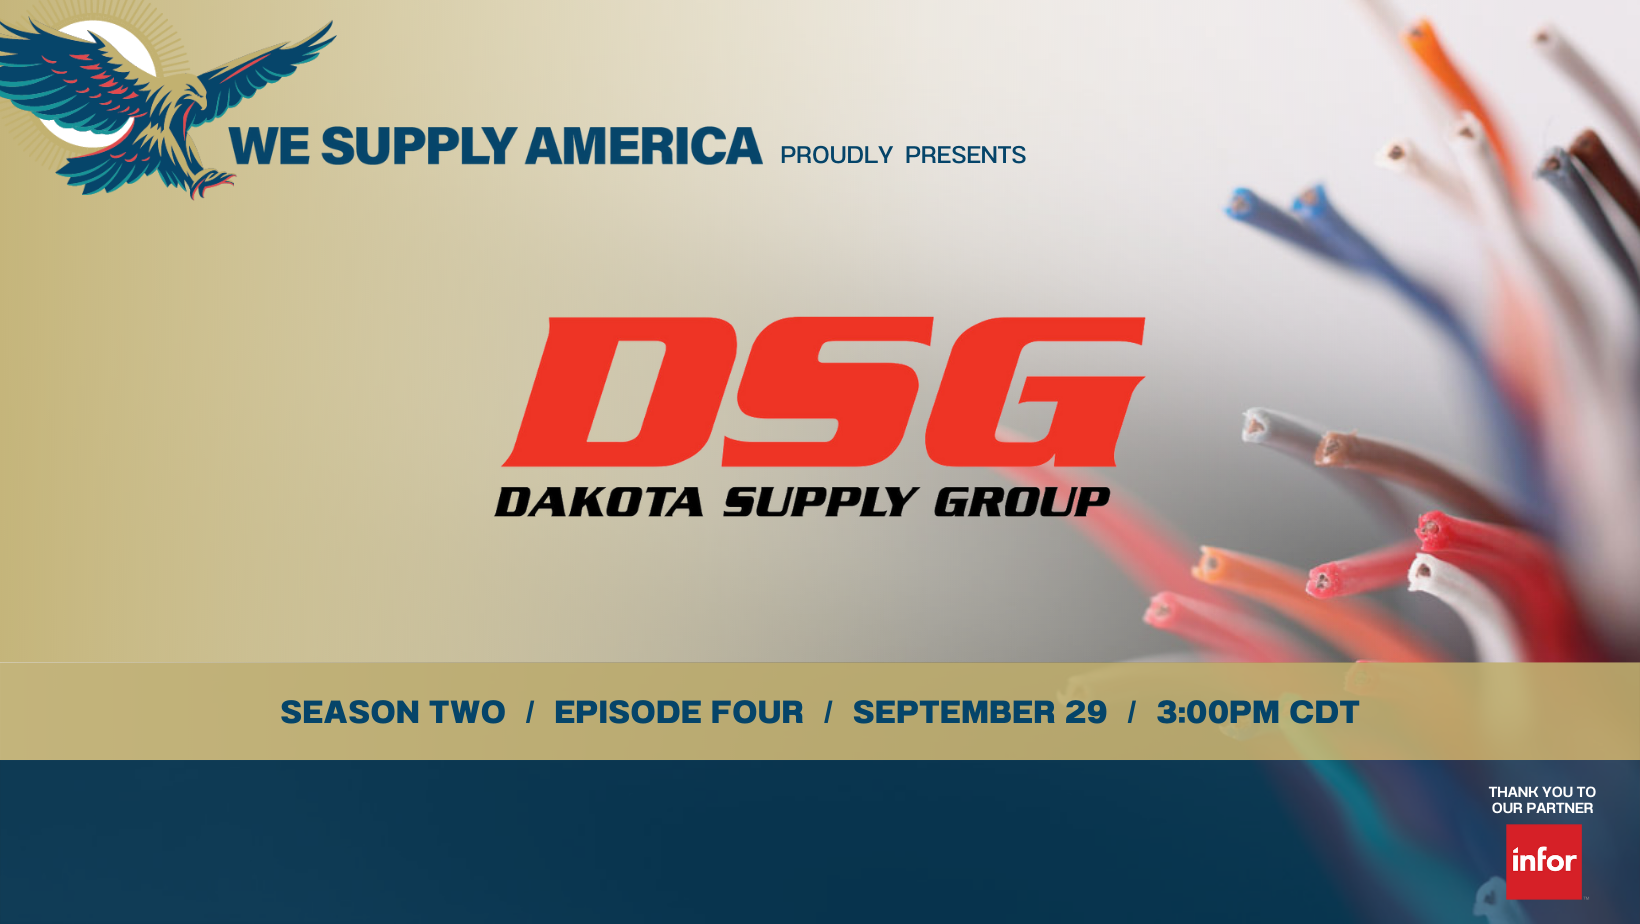 Dakota Supply Group & We Supply America